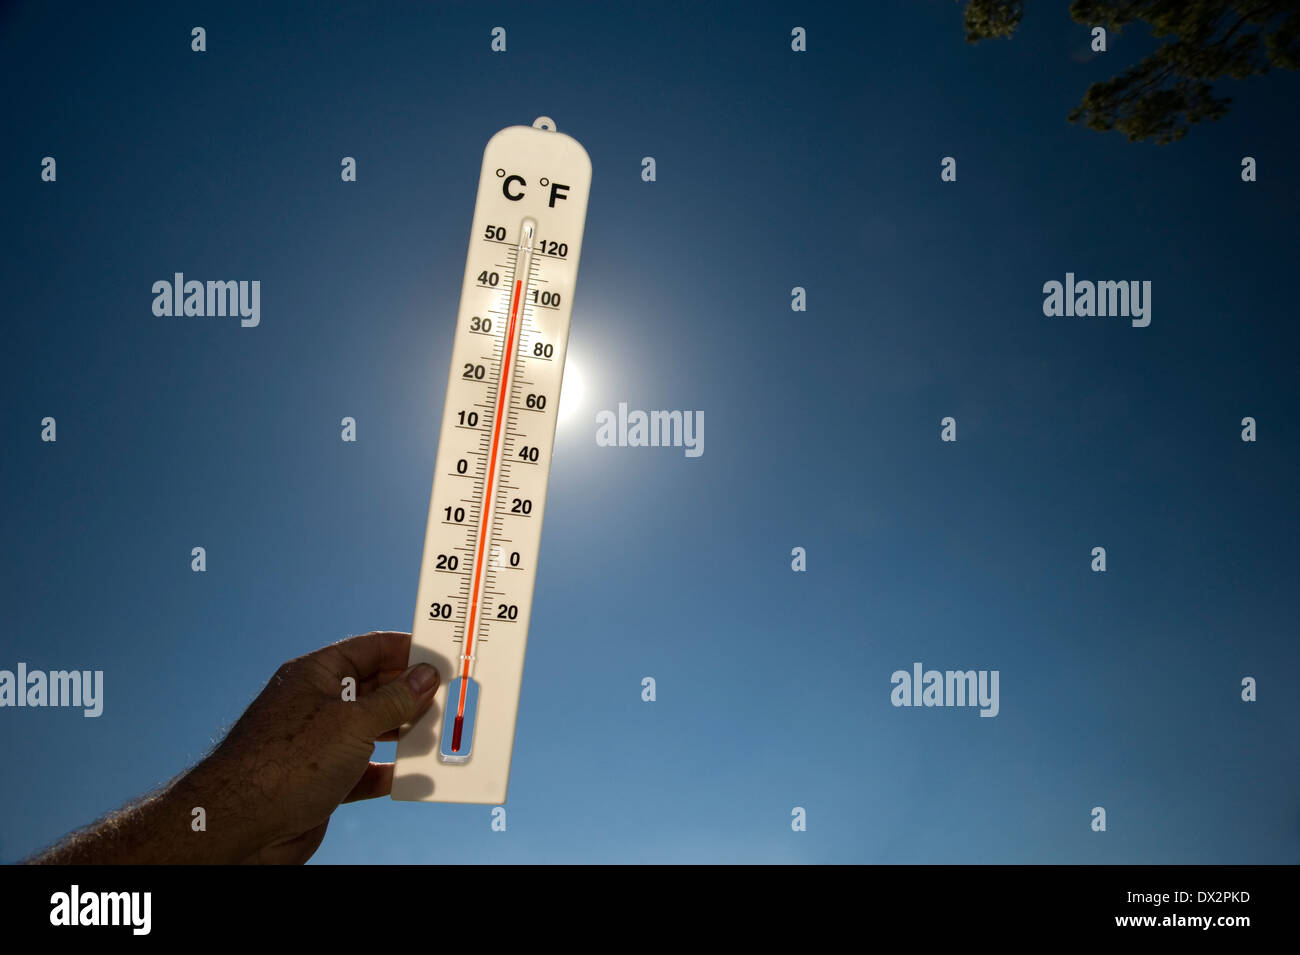 heißer Tag Wärme Sonne glühend Thermometer 40 Grad Stockfoto